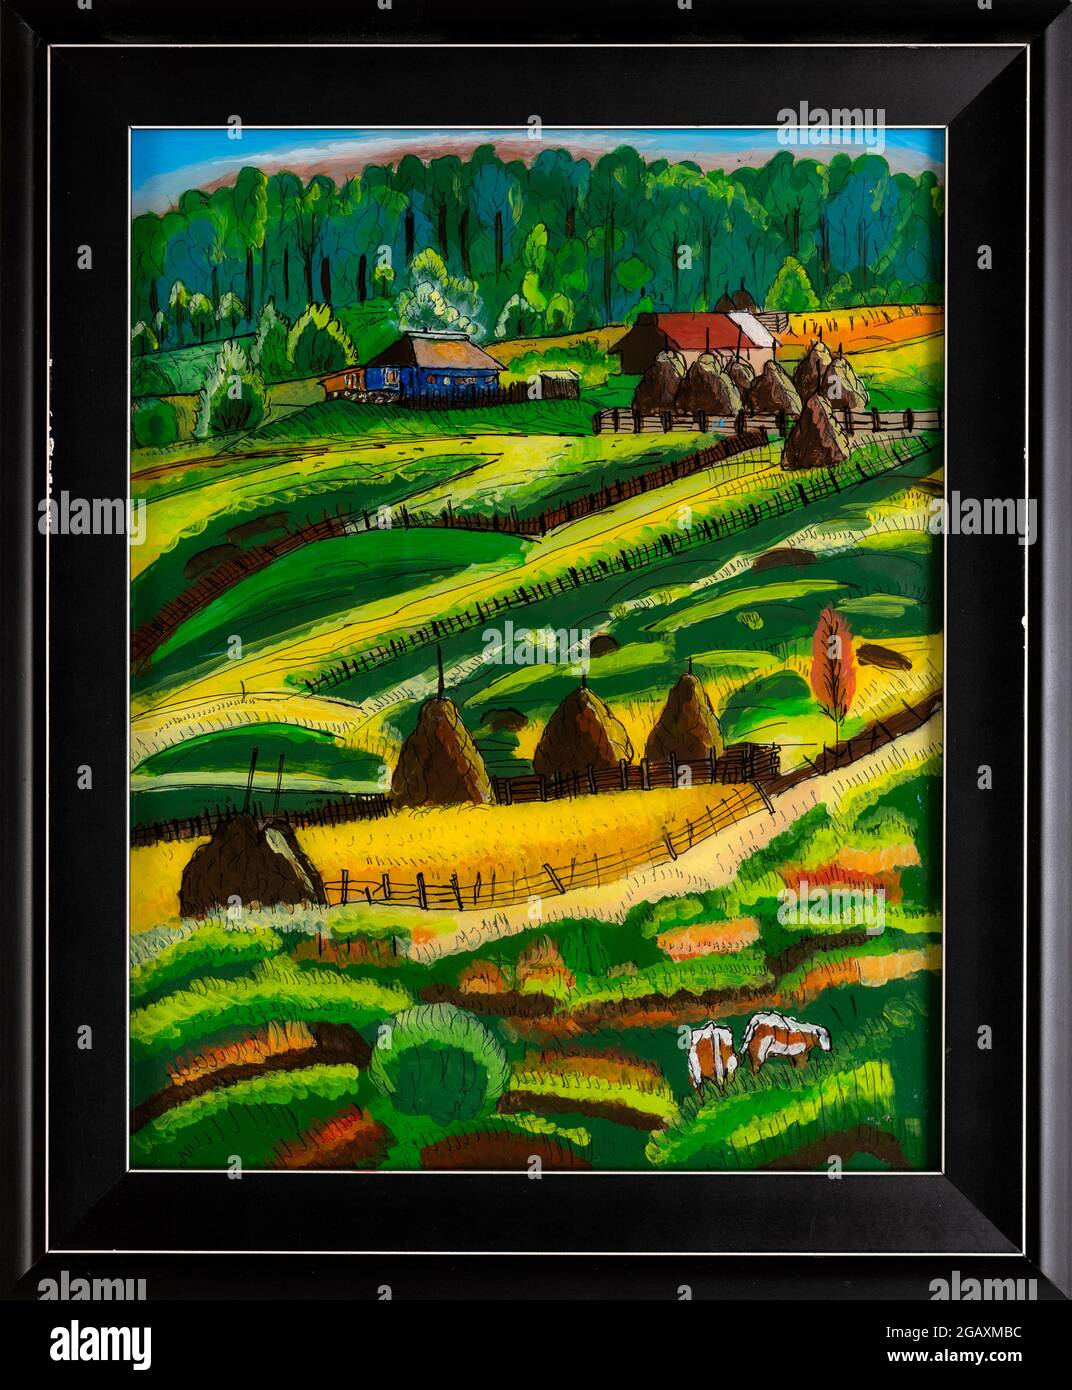 Peinture en verre inversé encadrée d'une ferme de campagne dans la région de Maramures en Roumanie. Peinture colorée naïve de paysage vallonné. Banque D'Images